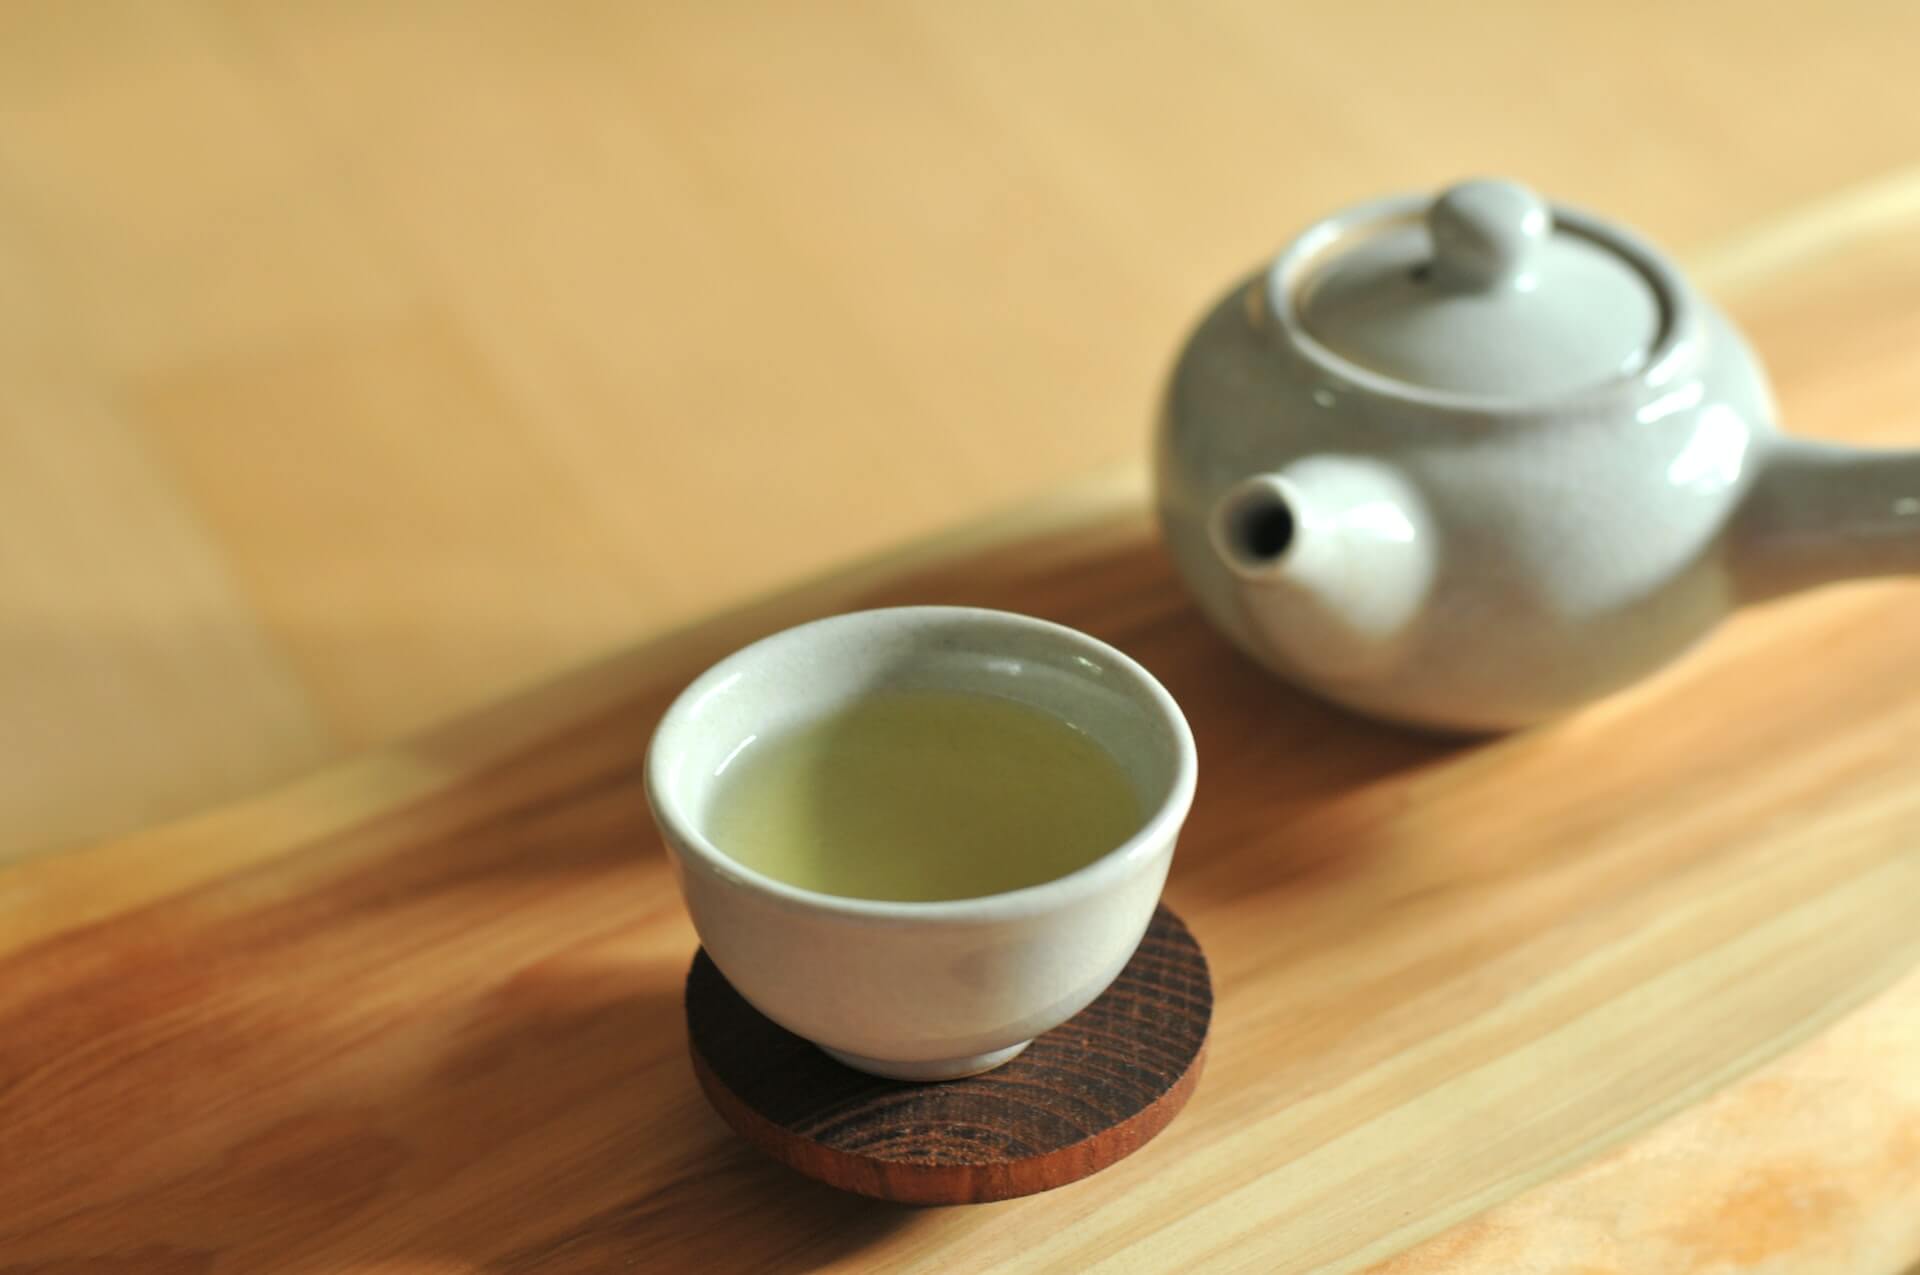 Grüner Tee zum Abnehmen - Geht das?